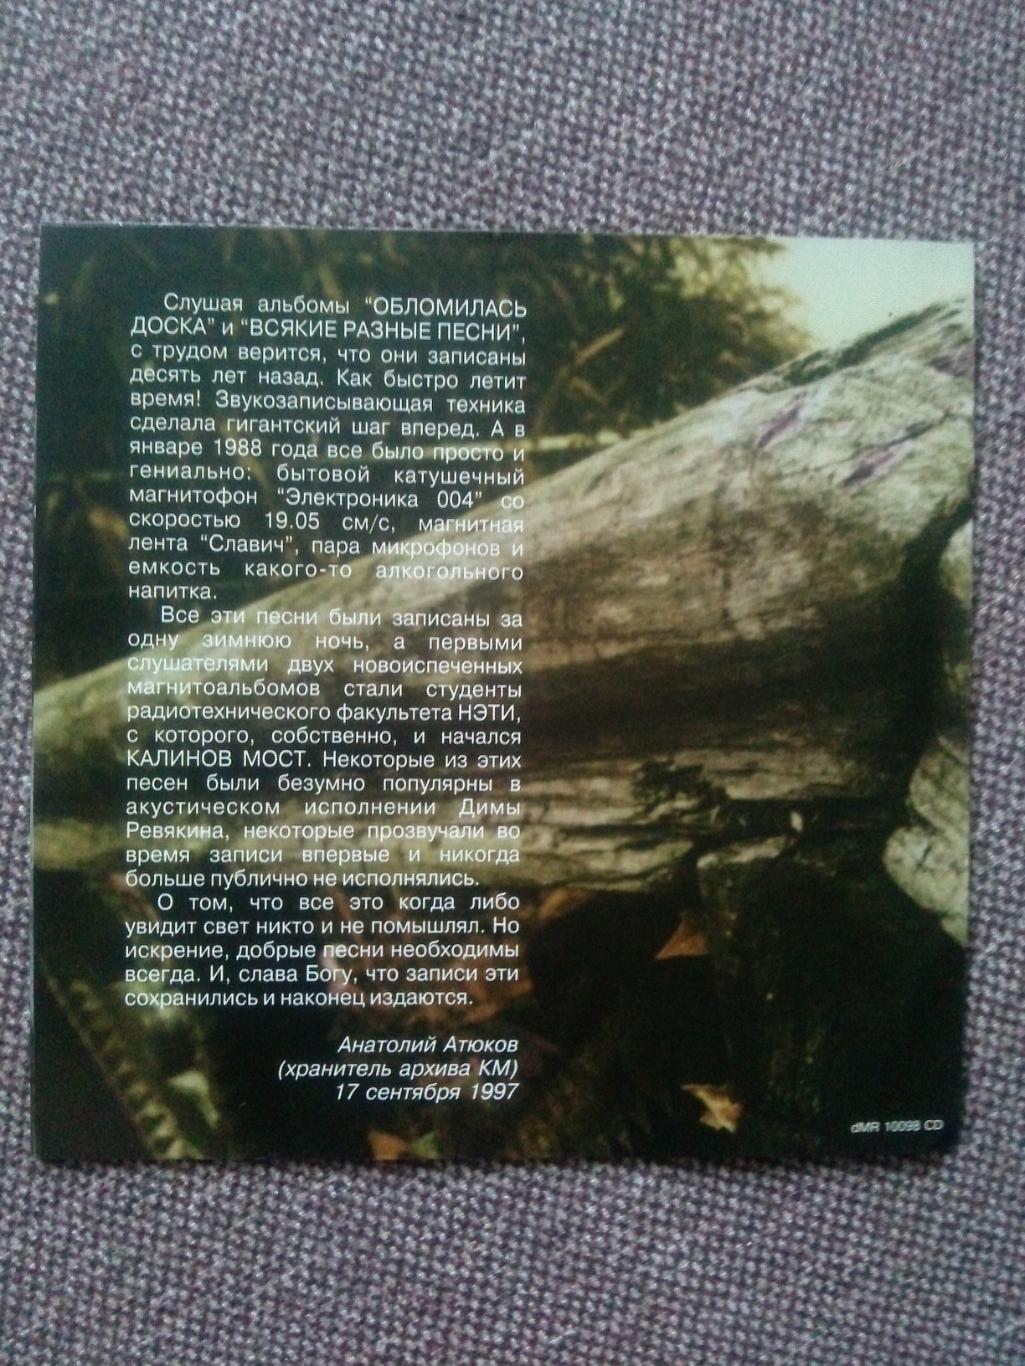 CD диск : Дмитрий Ревякин -Обломилась доска 1988 г. (группа Калинов мост) 1